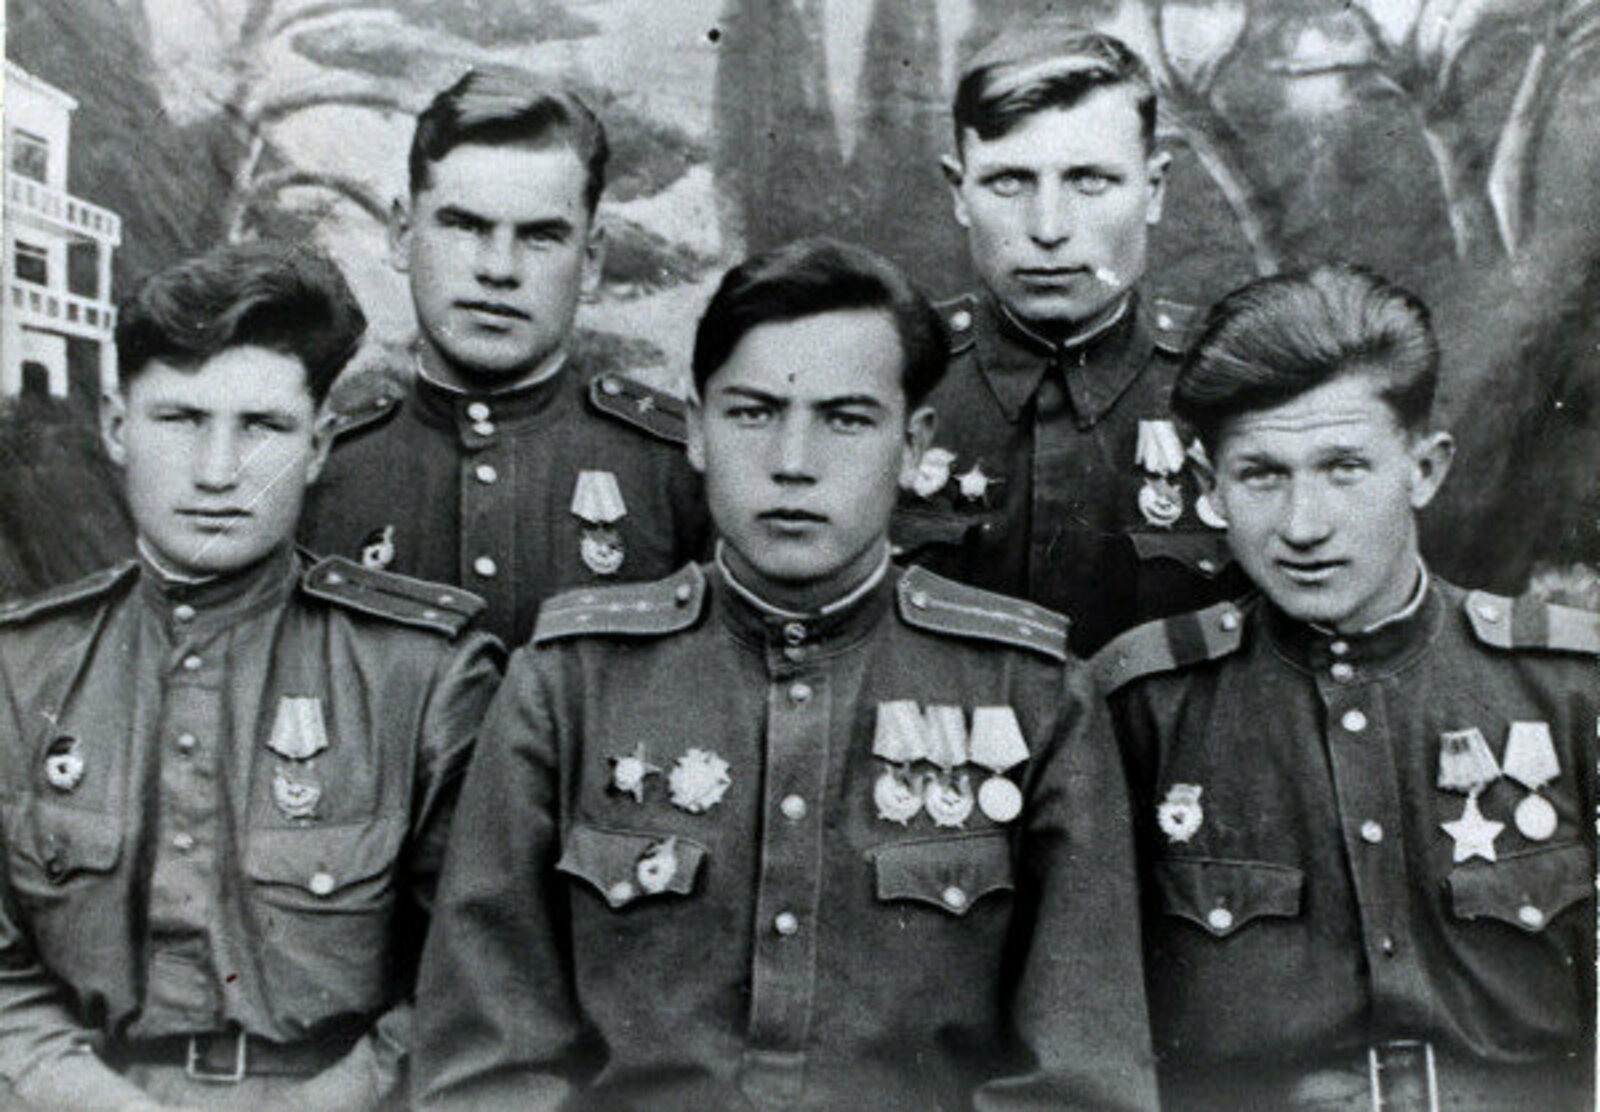 Летчики 76 гв. ШАП в доме отдыха 1-й Воздушной Армии в г. Алитус, 1944 г.: Городилов, Гареев, (стрелок), Шатило (стоит), Павлов (стрелок)